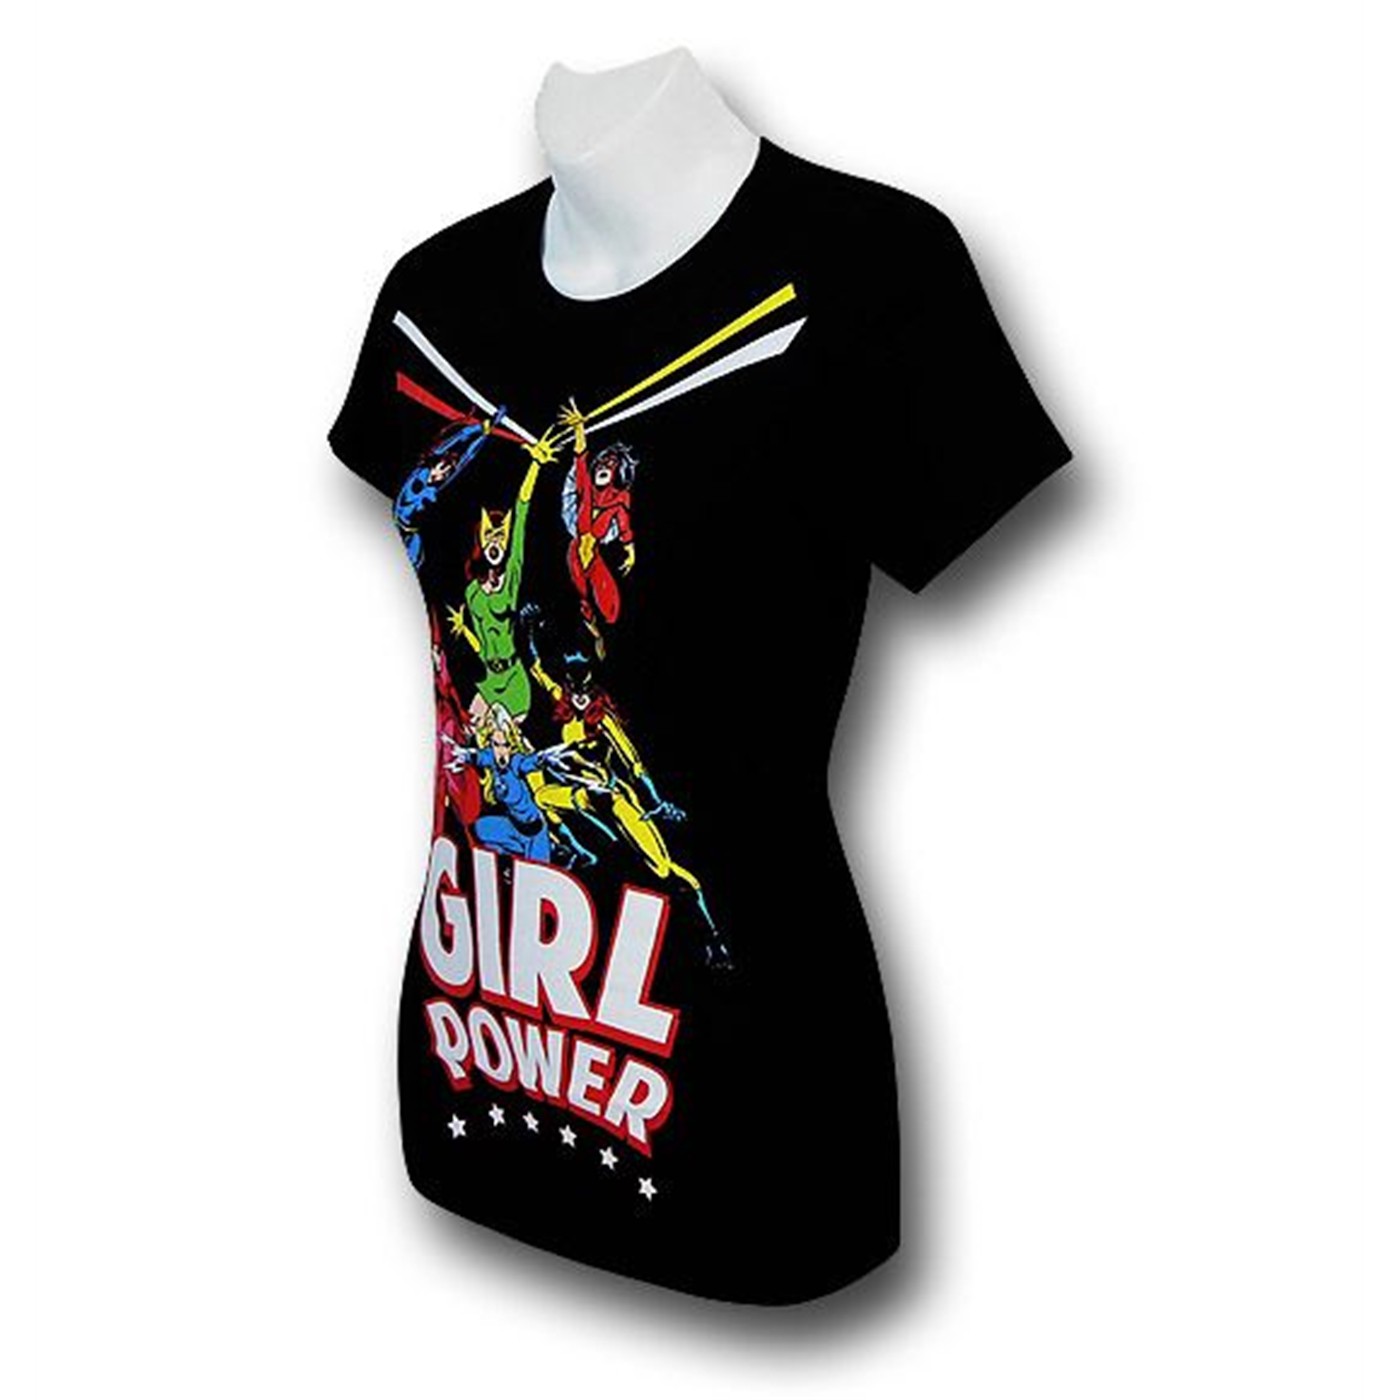 Marvel Girl Power Action Shot Women's T-Shirt